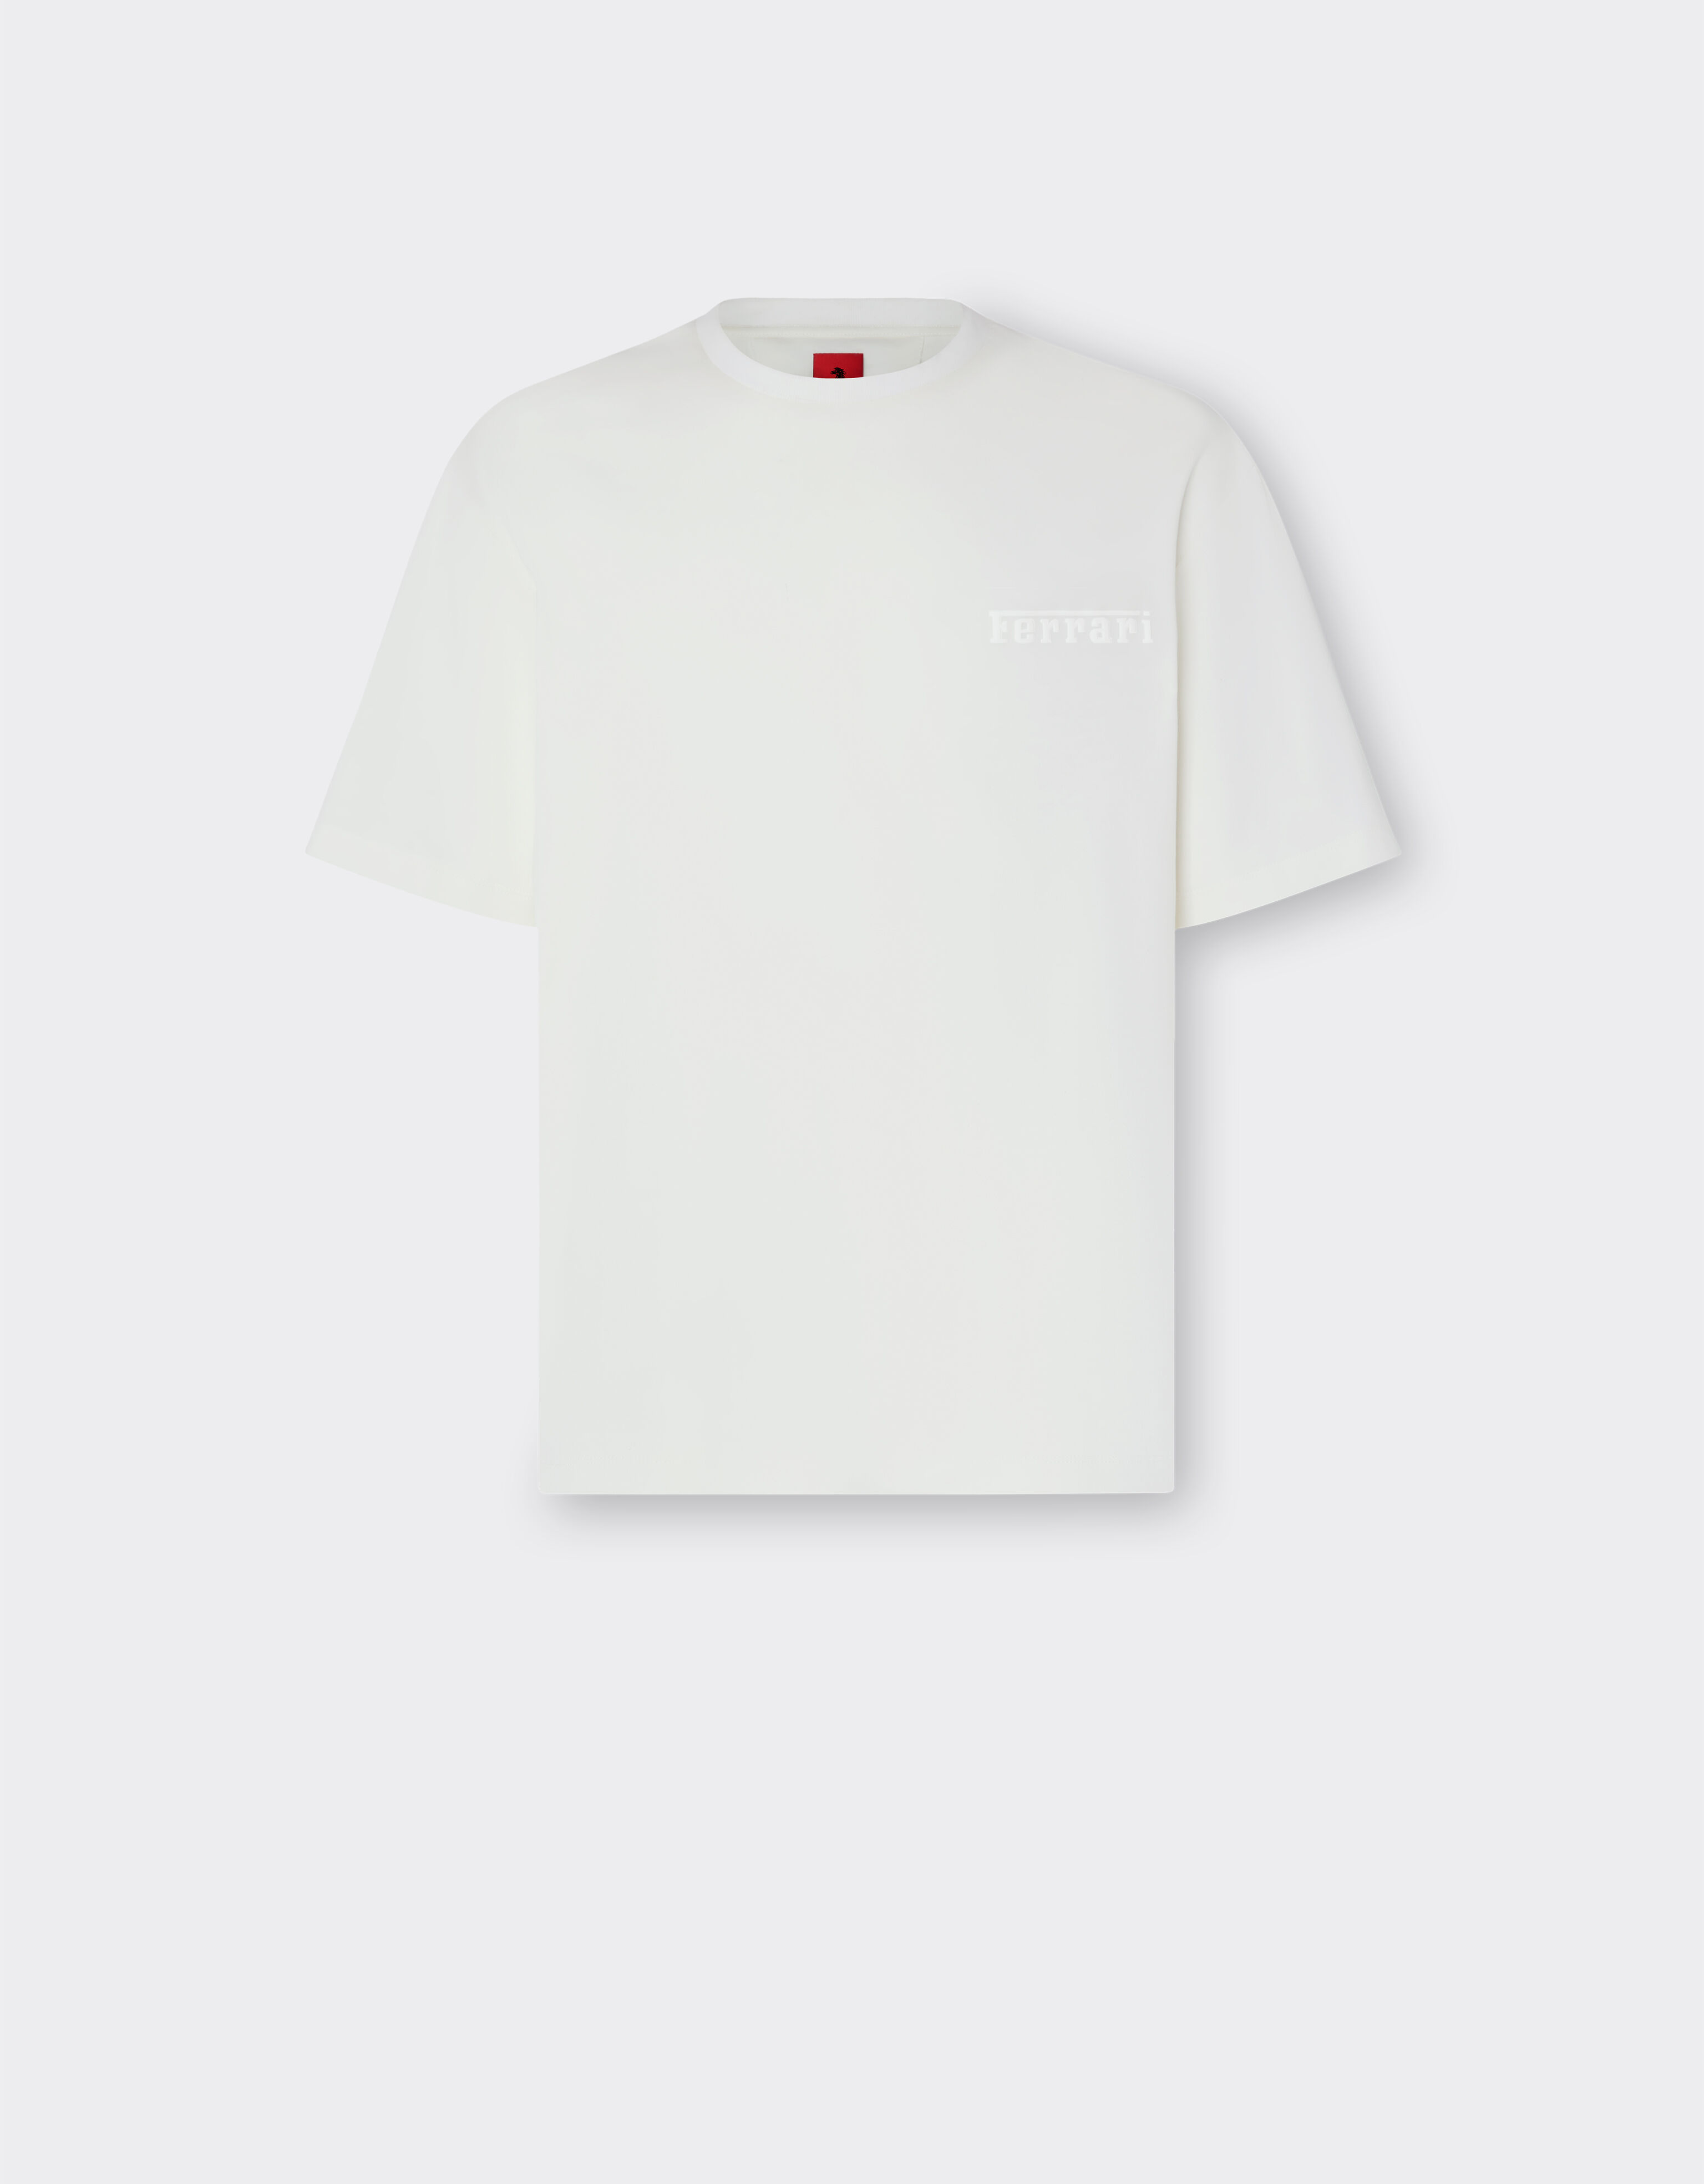 Ferrari Camiseta de algodón con logotipo Ferrari Blanco óptico 48114f